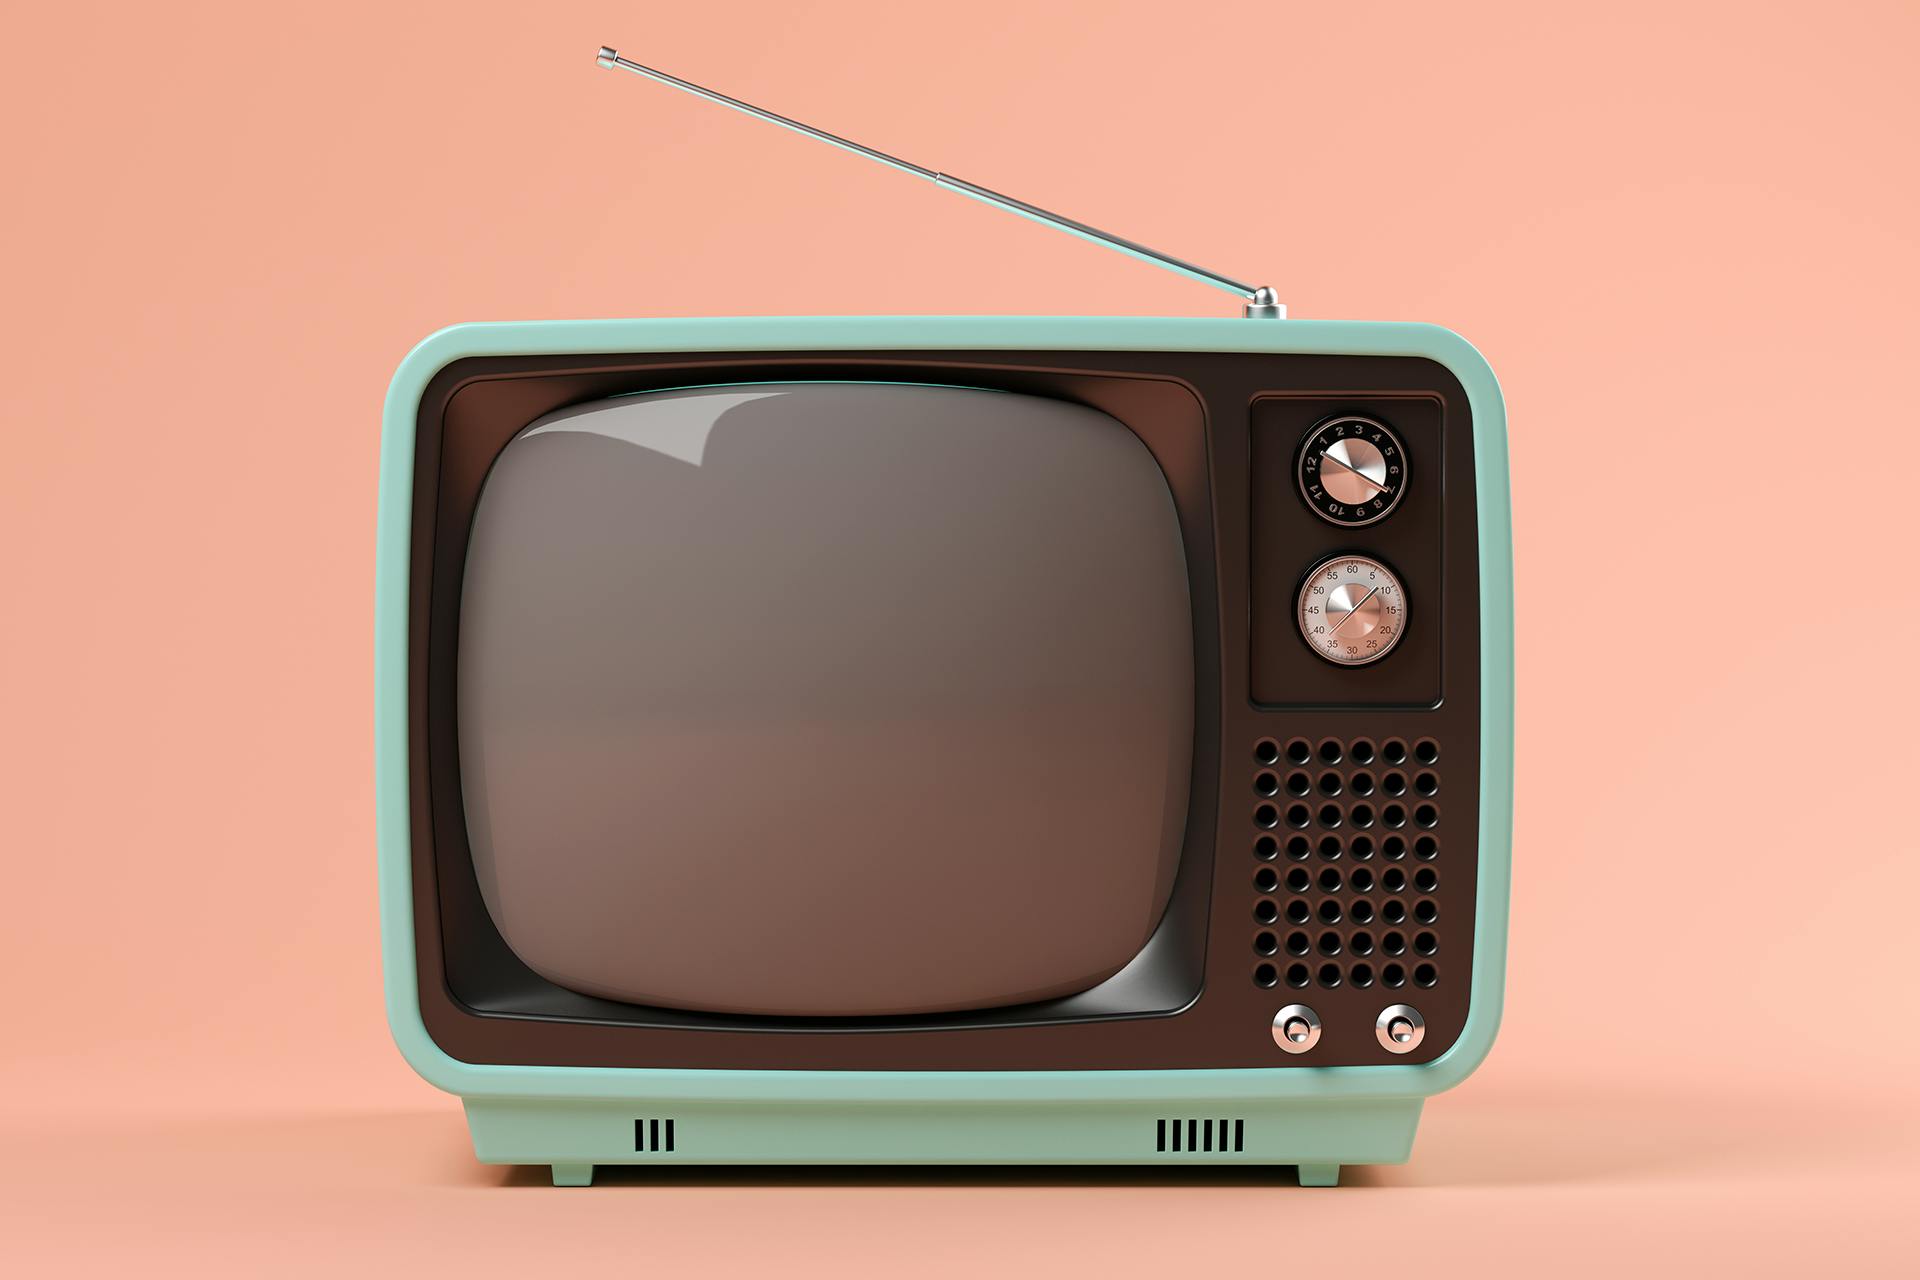 Ouderwetse televisie voor een roze achtergrond voor de brand awareness gids 2022